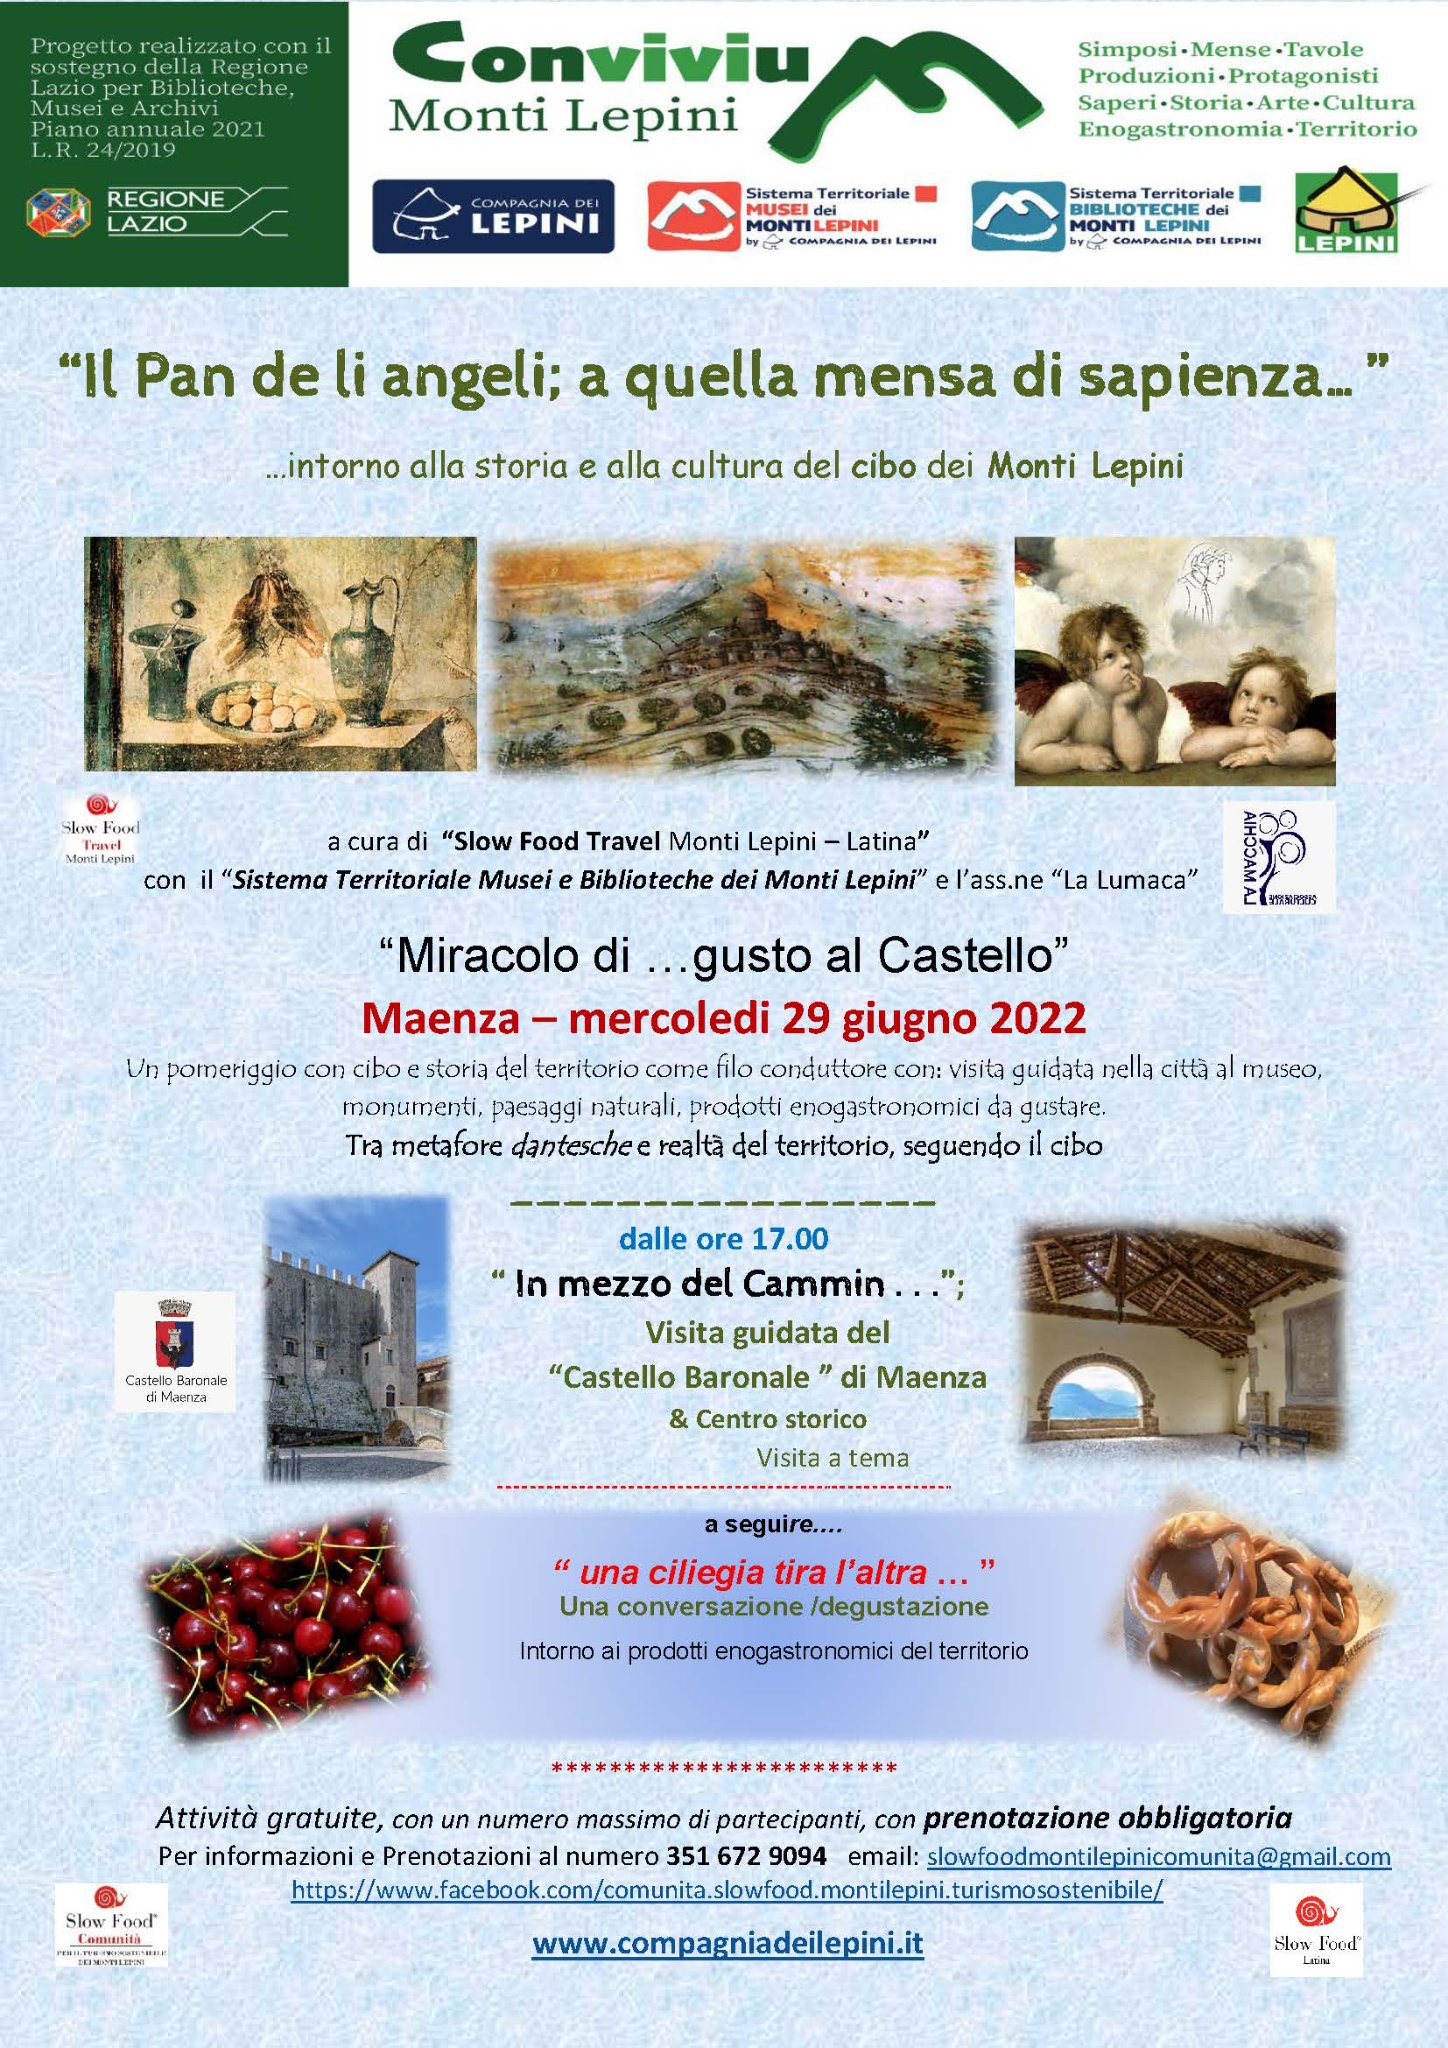 Convivium Maenza: IL PAN DE LI ANGELI…A QUELLA MENSA DI SAPIENZA – Miracolo di ... gusto al Castello" @ Maenza